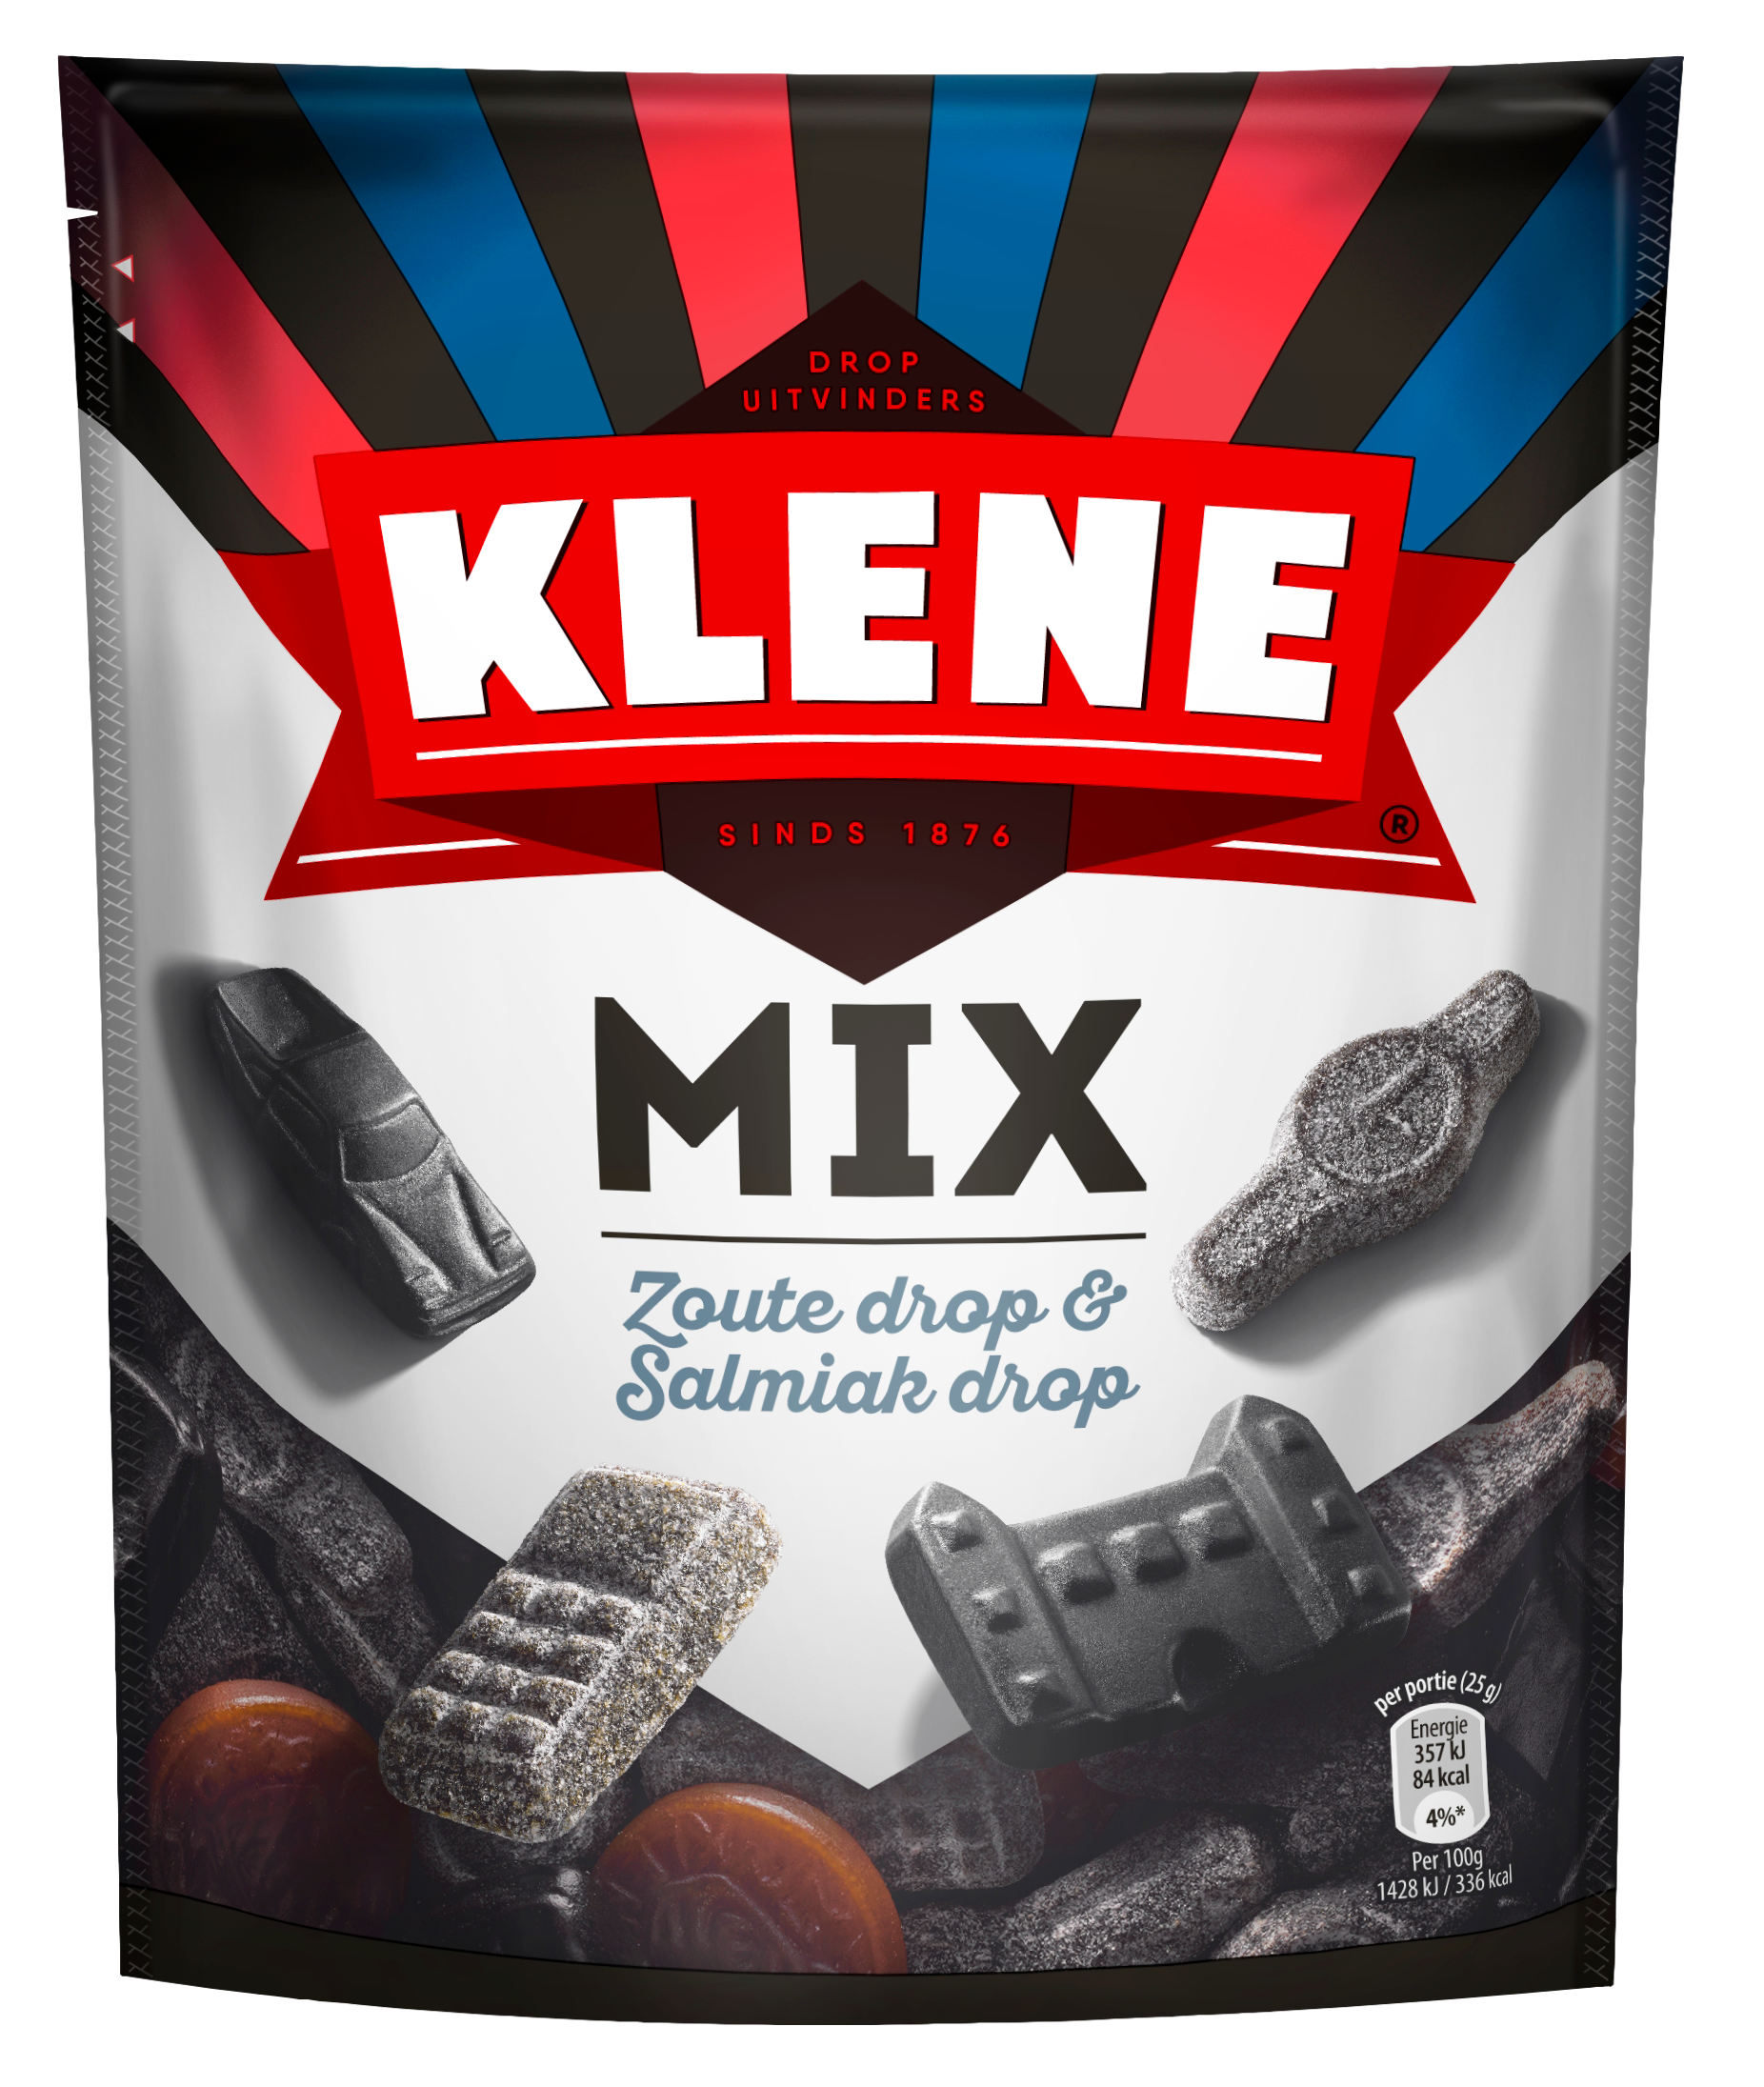 Klene Mix - Zoute & Salmiak drop